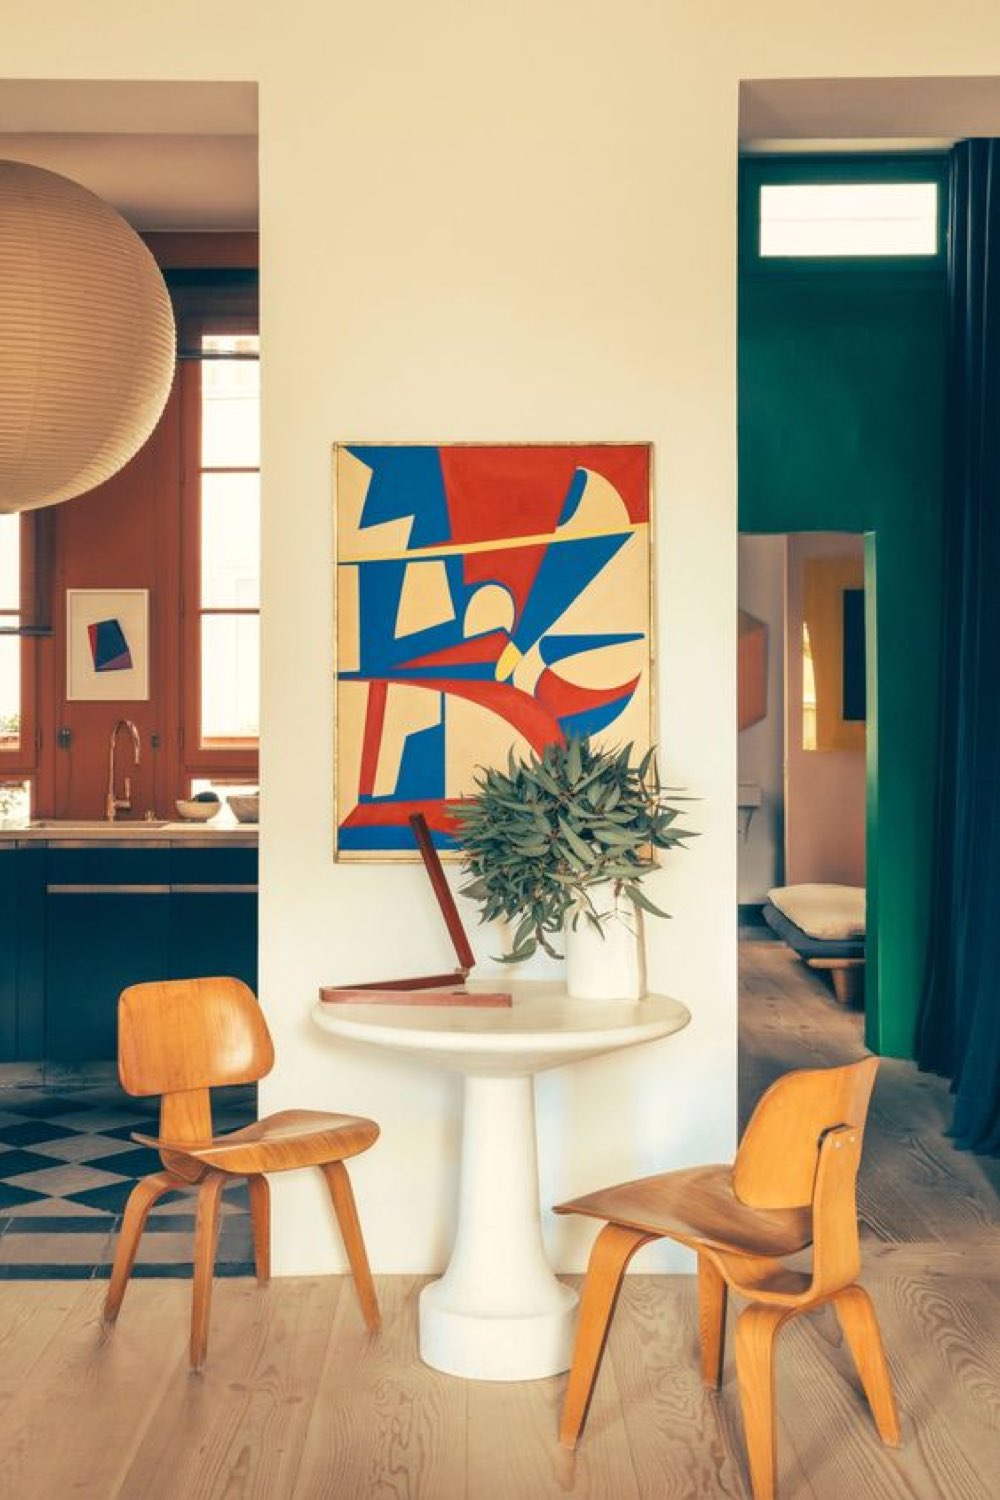 caracteristique decoration modern design pan de mur tableau abstrait coloré rouge et bleu chaise en bois vintage table ronde coin café appartement